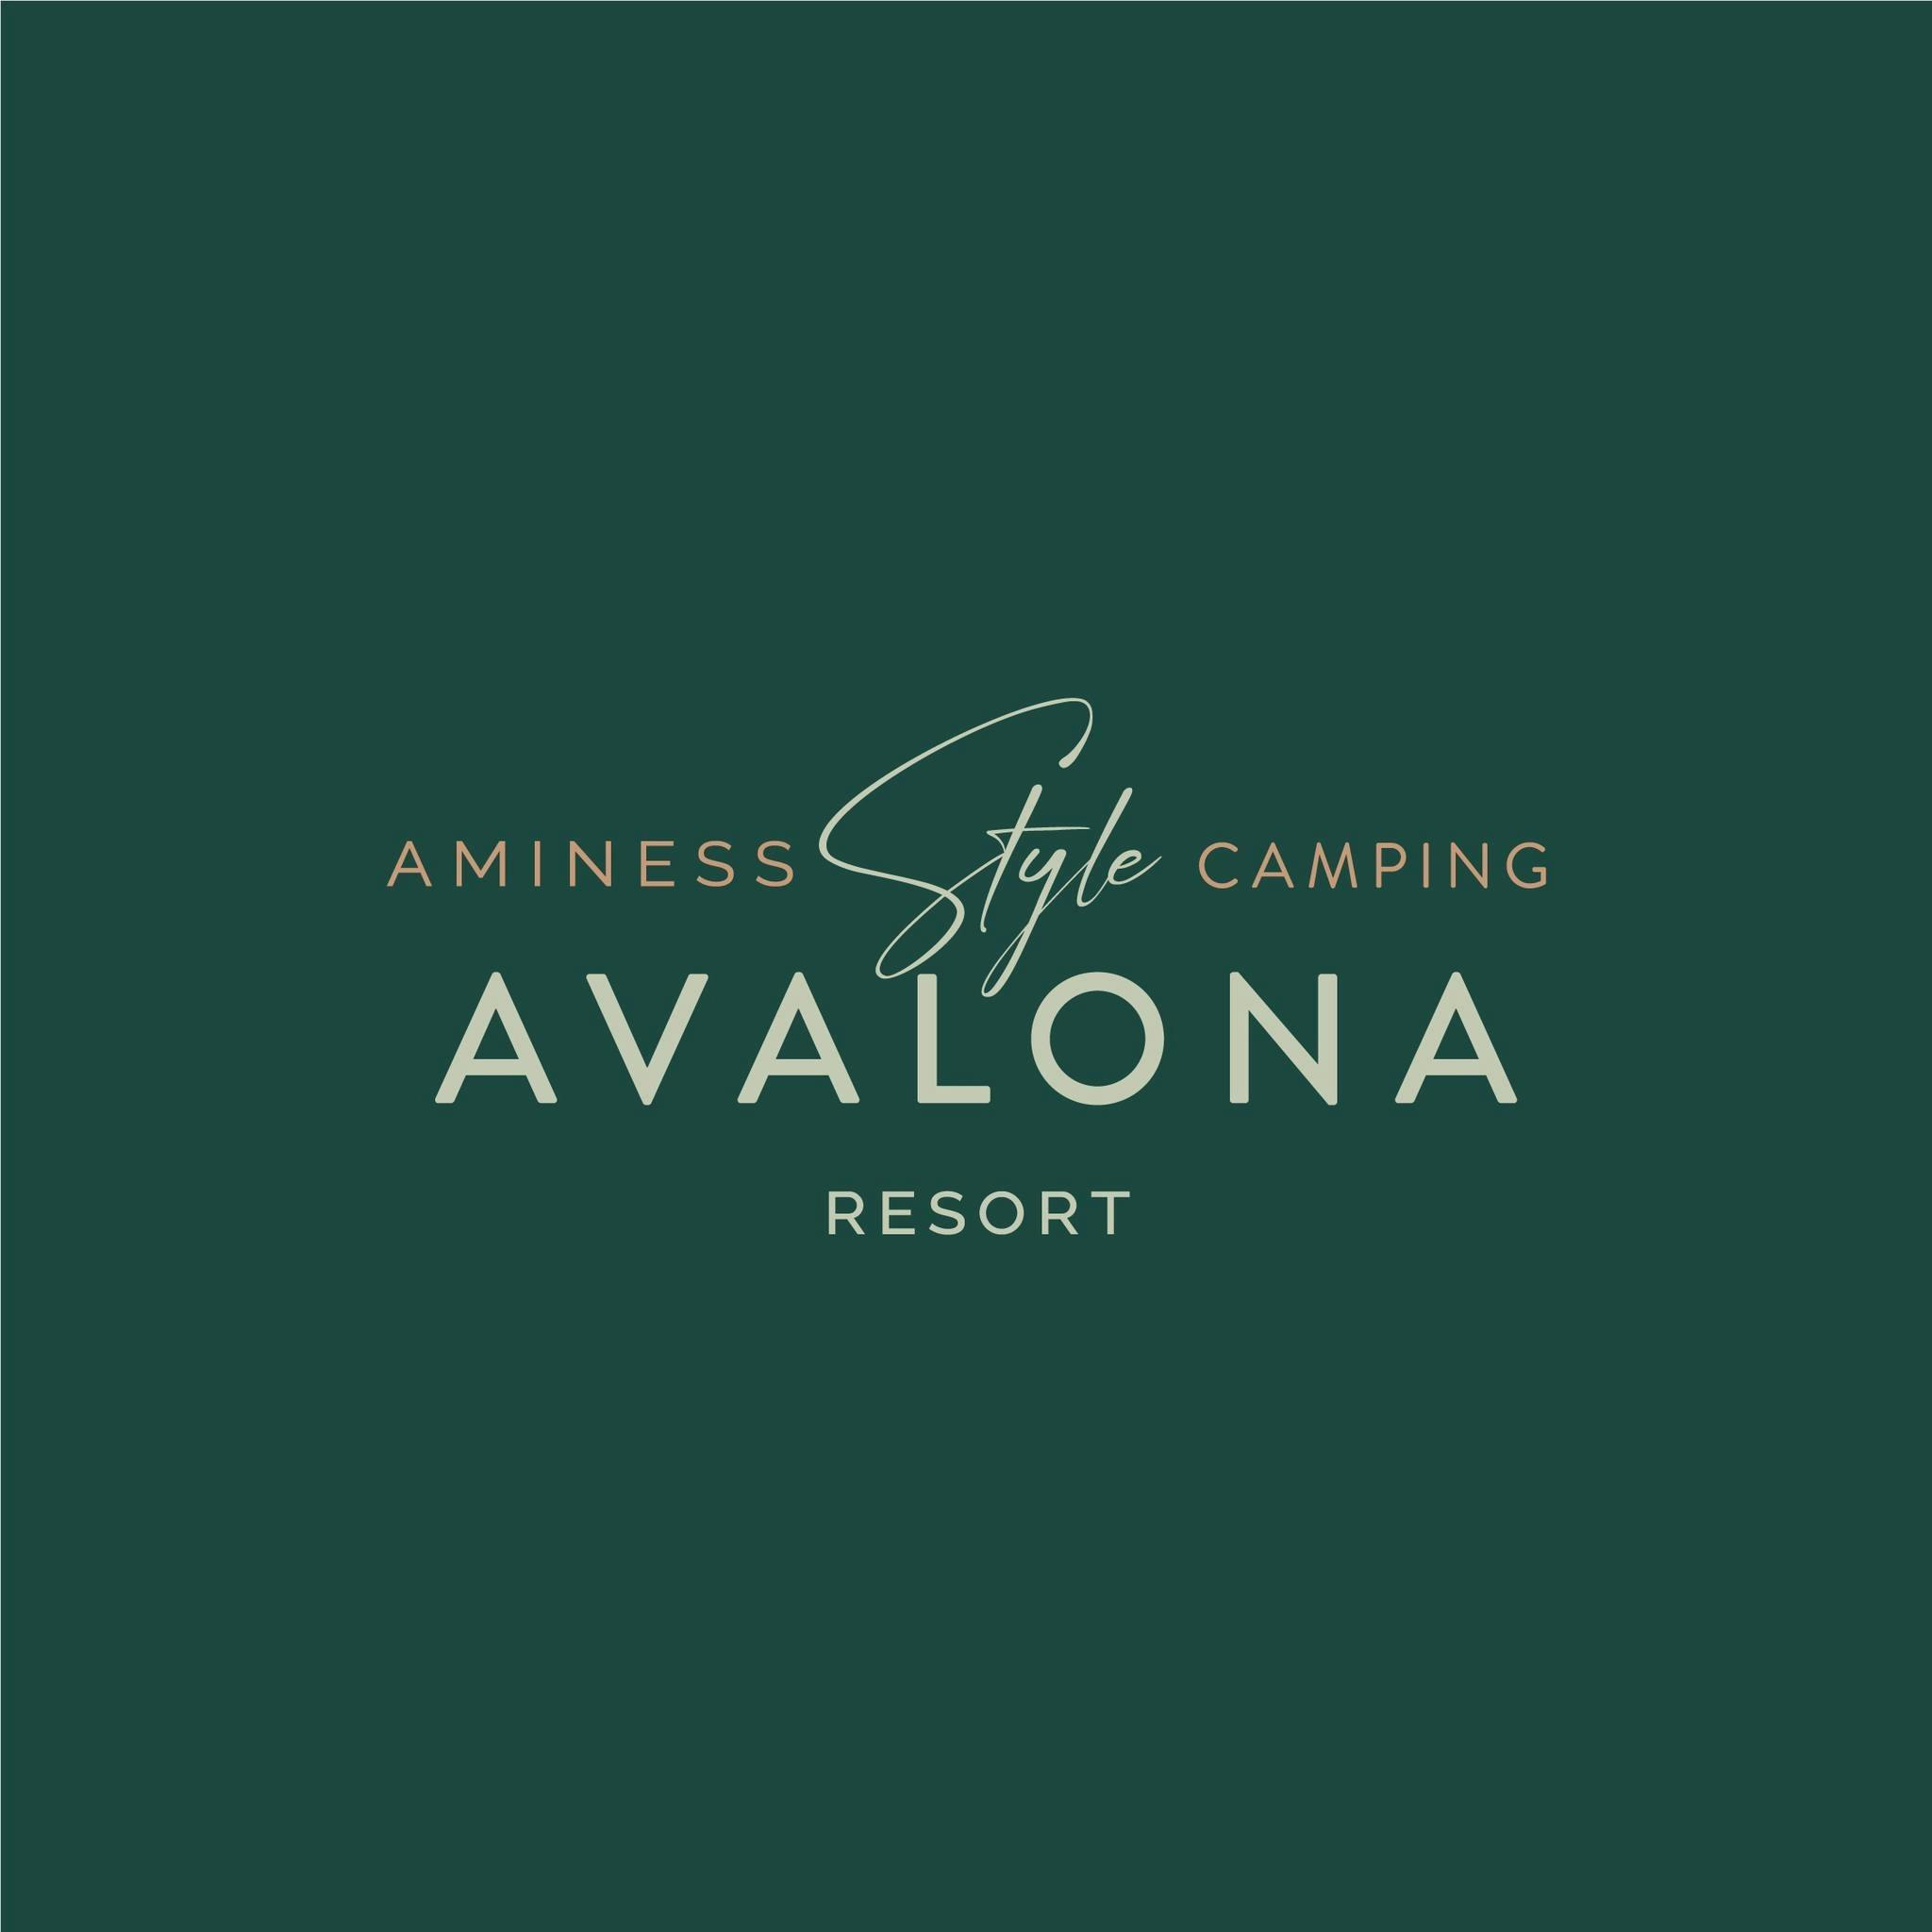 Aminess Avalona Camping Resort